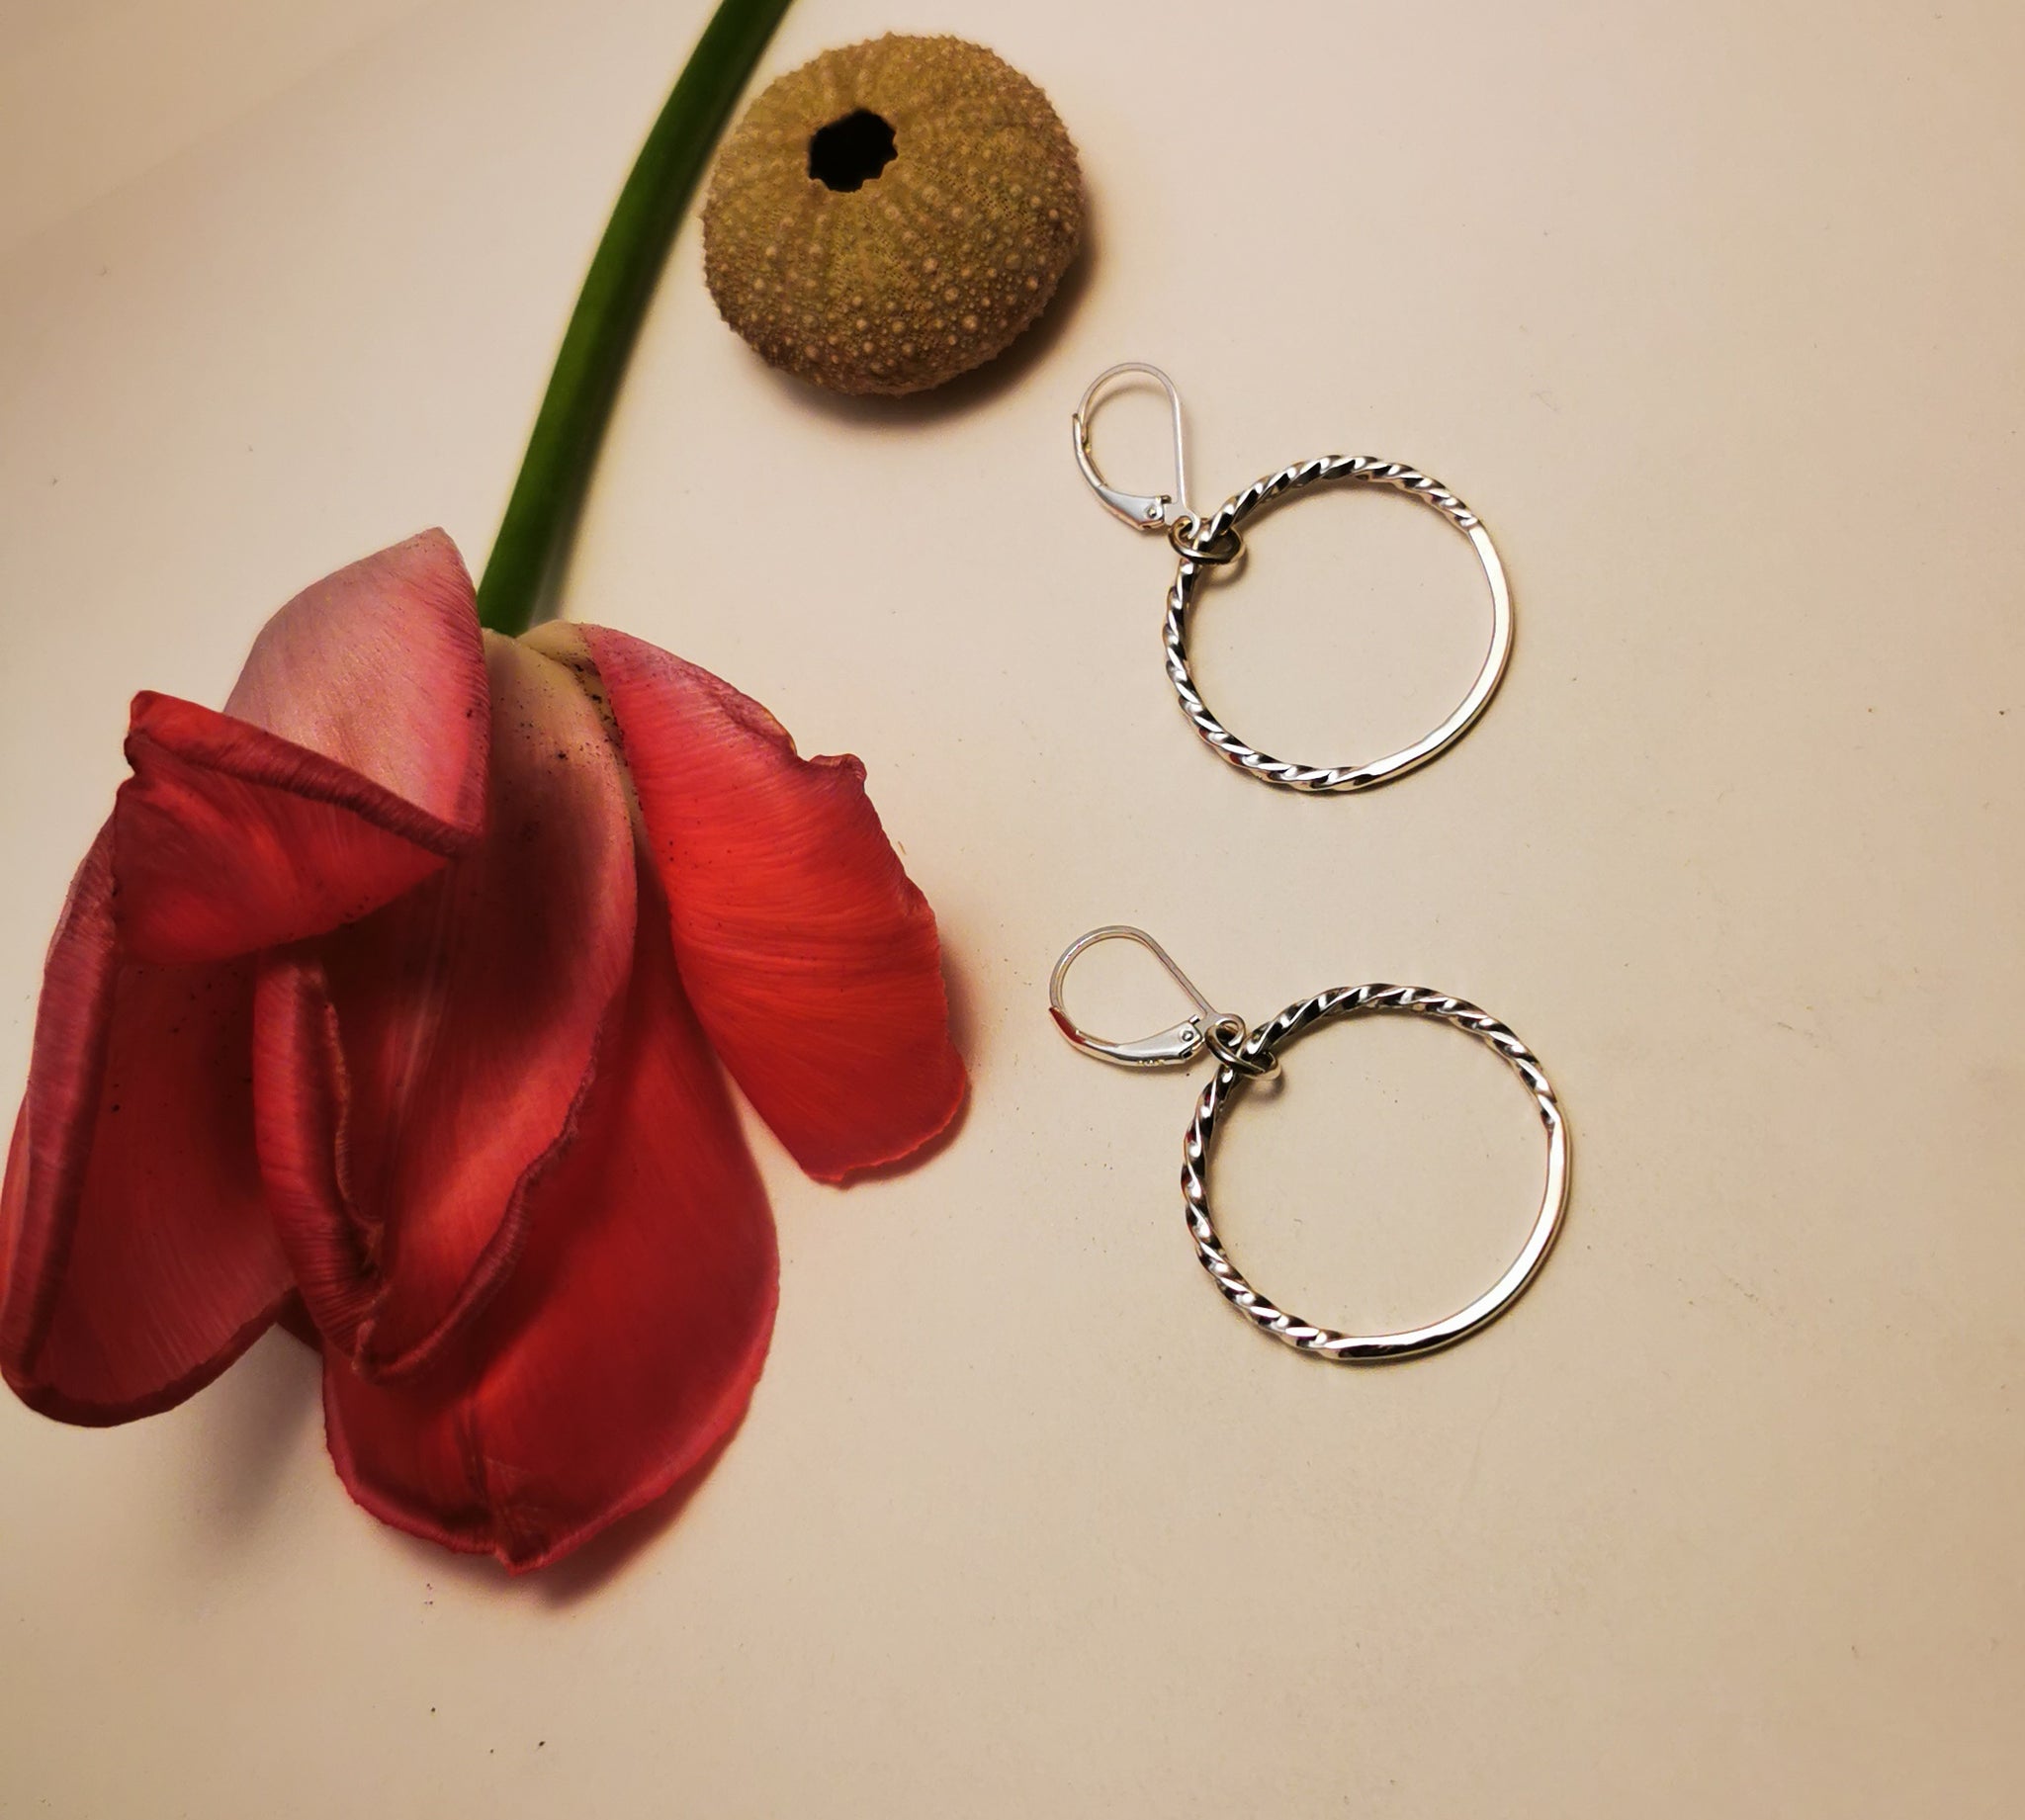 MEDIUM NEW MOON, dangling hoop earrings